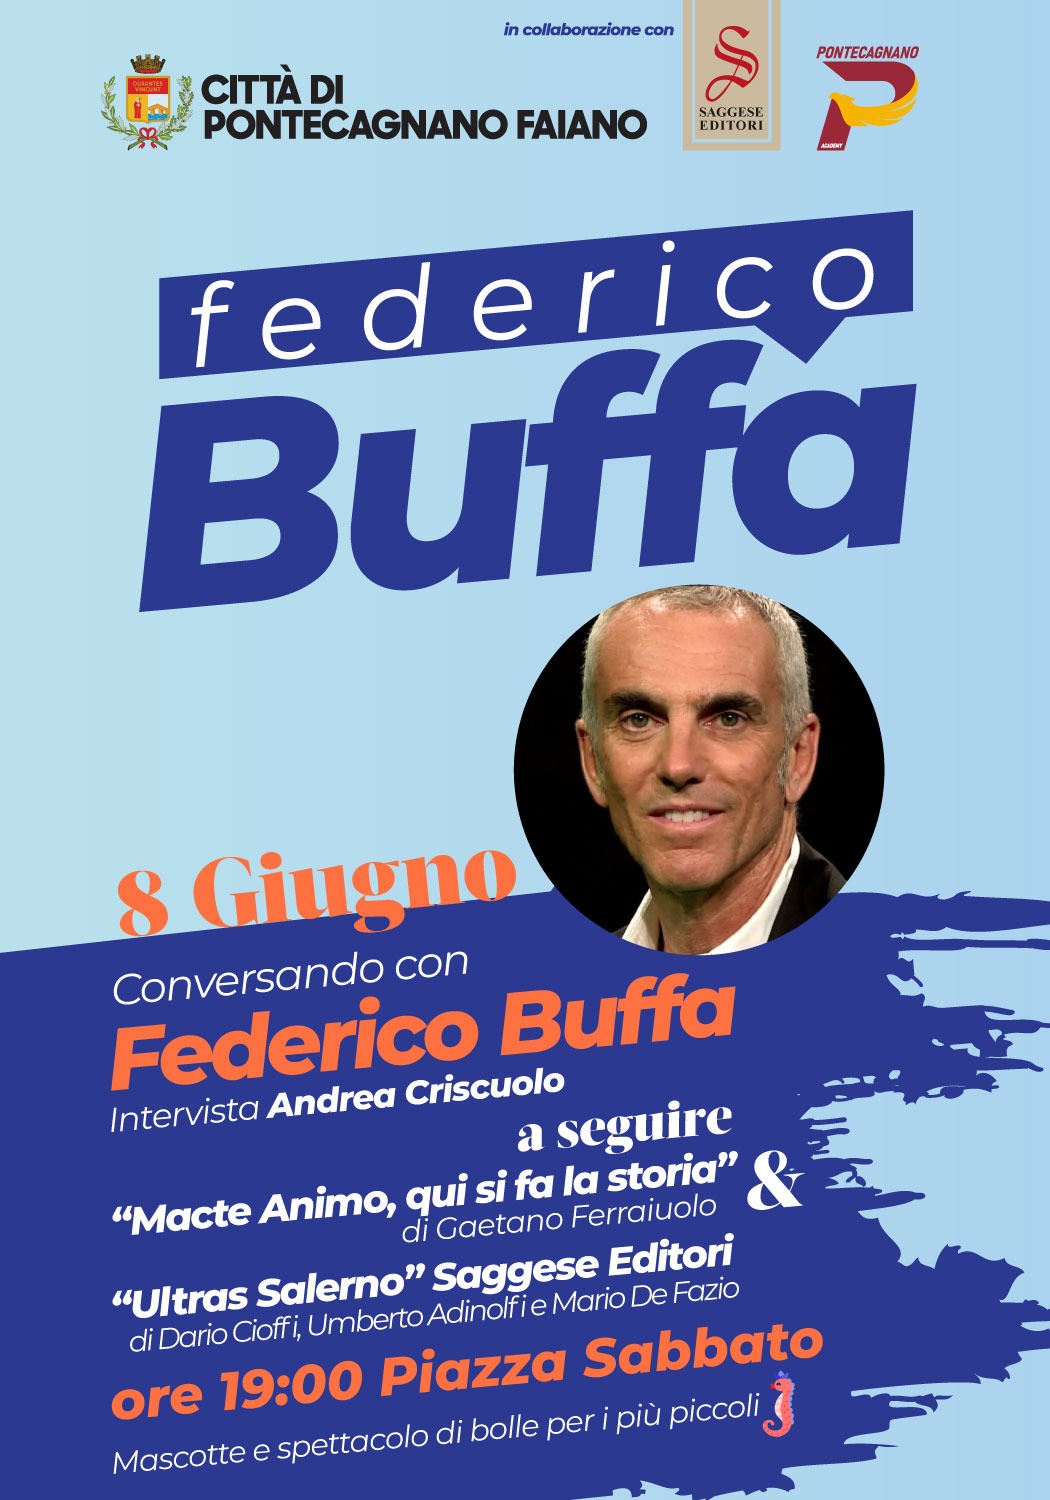 Federico Buffa Pontecagnano